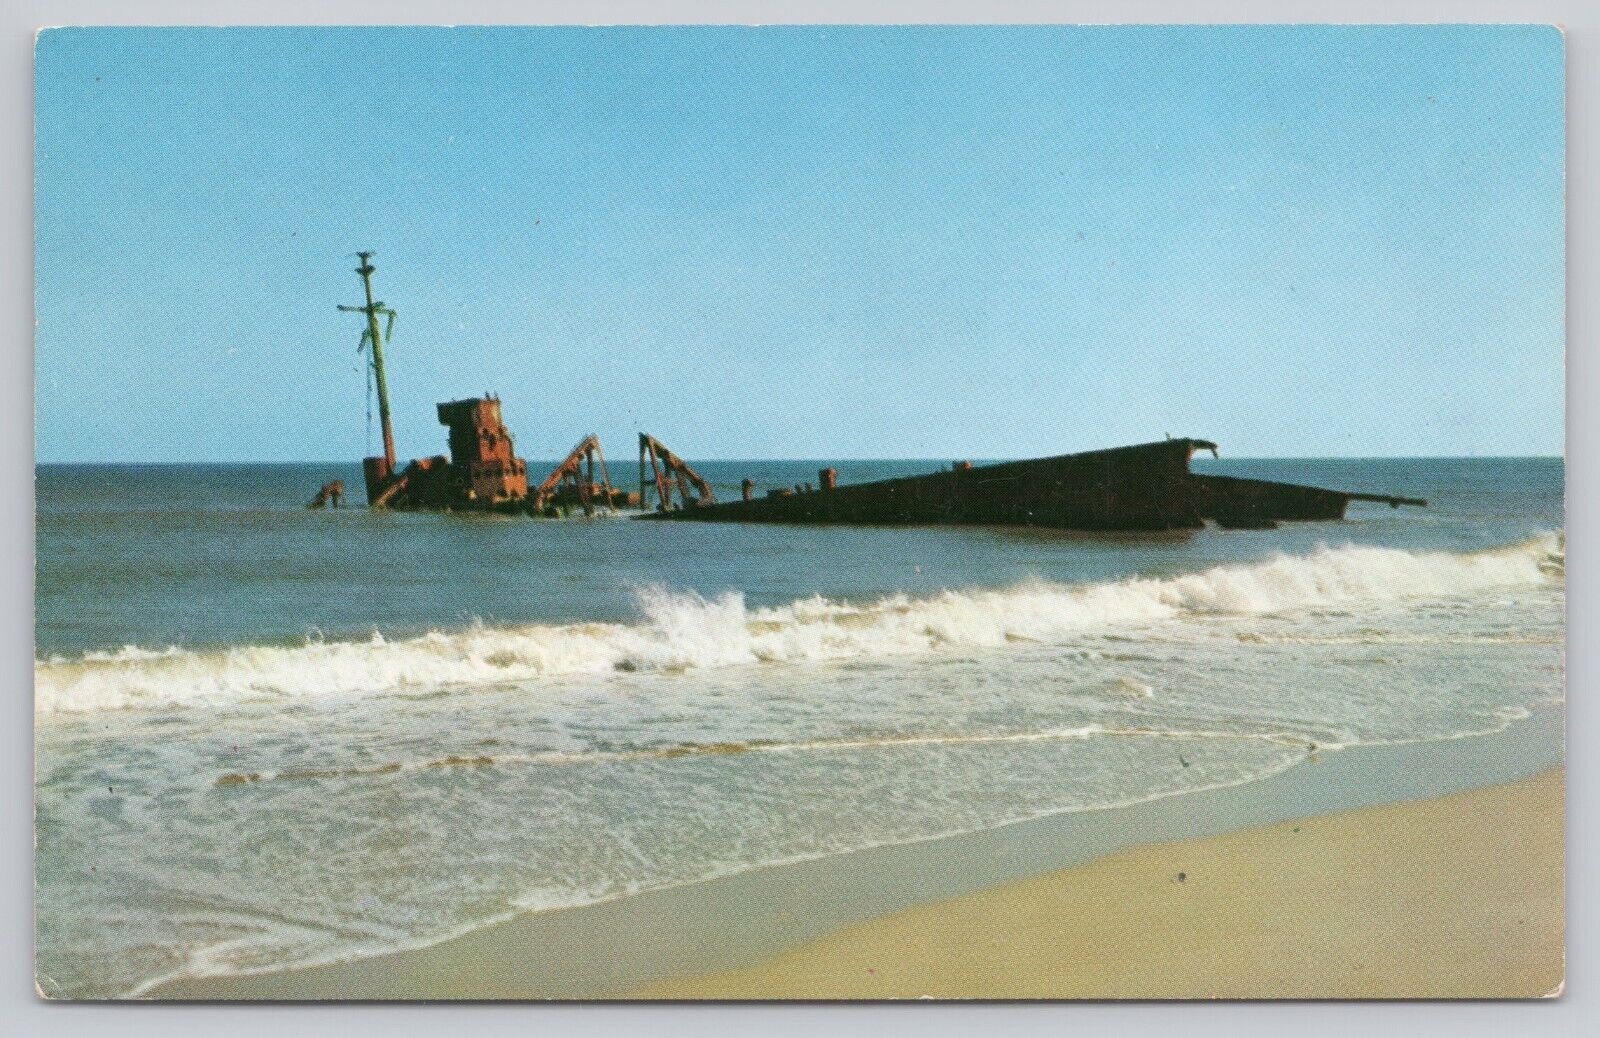 Rodanthe Hatteras Island North Carolina, Outer Banks Shipwreck, Vintage Postcard